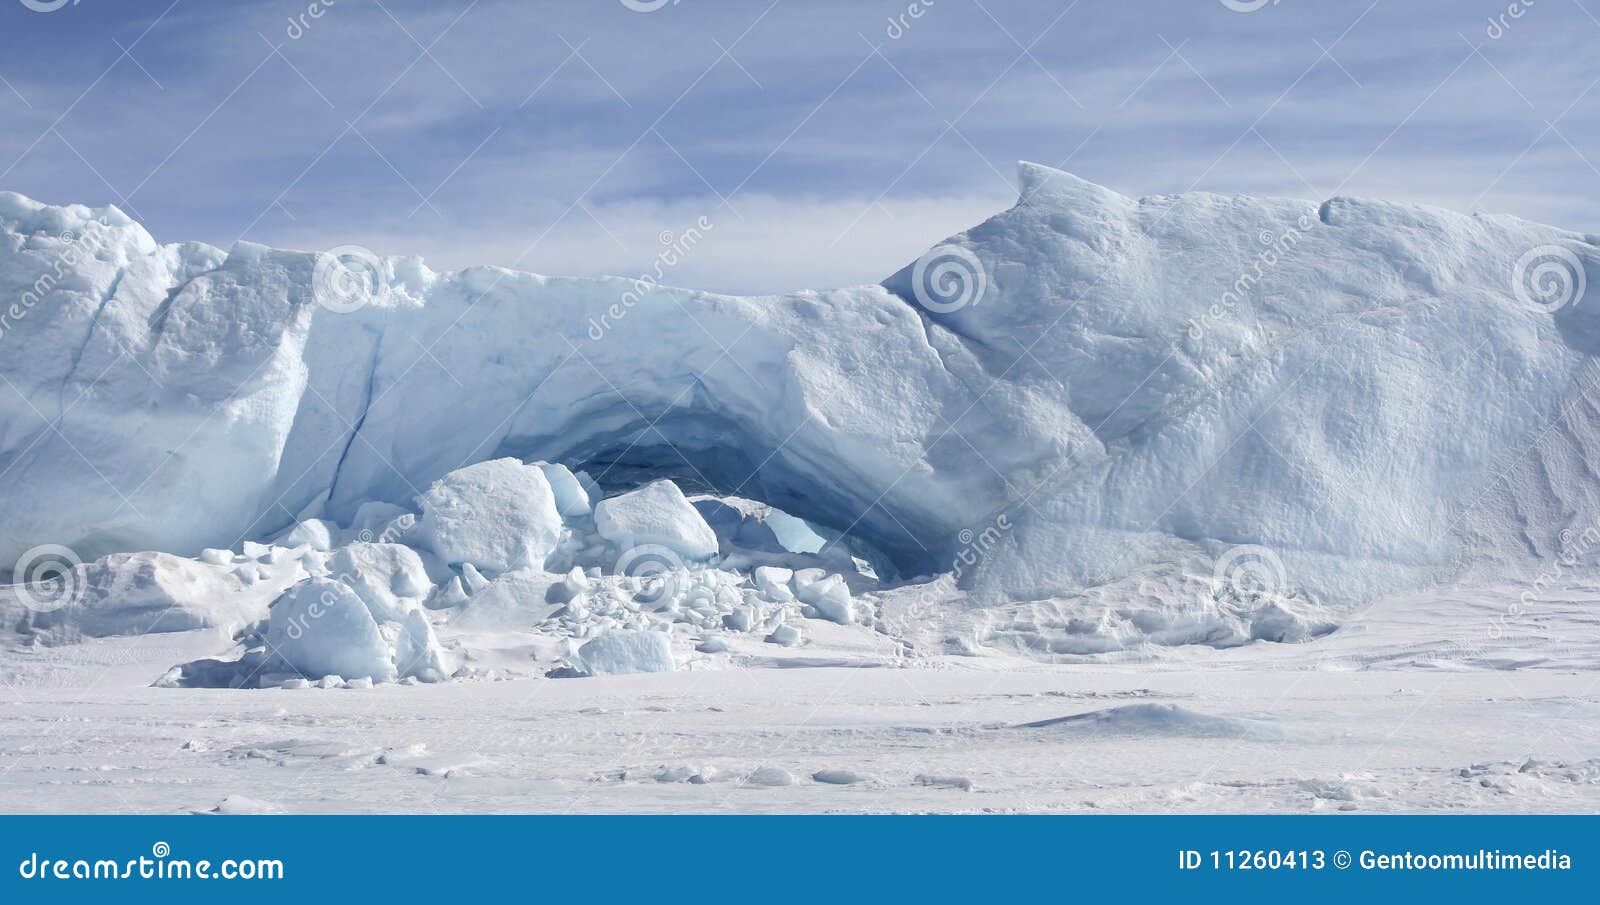 icebergs on antarctica